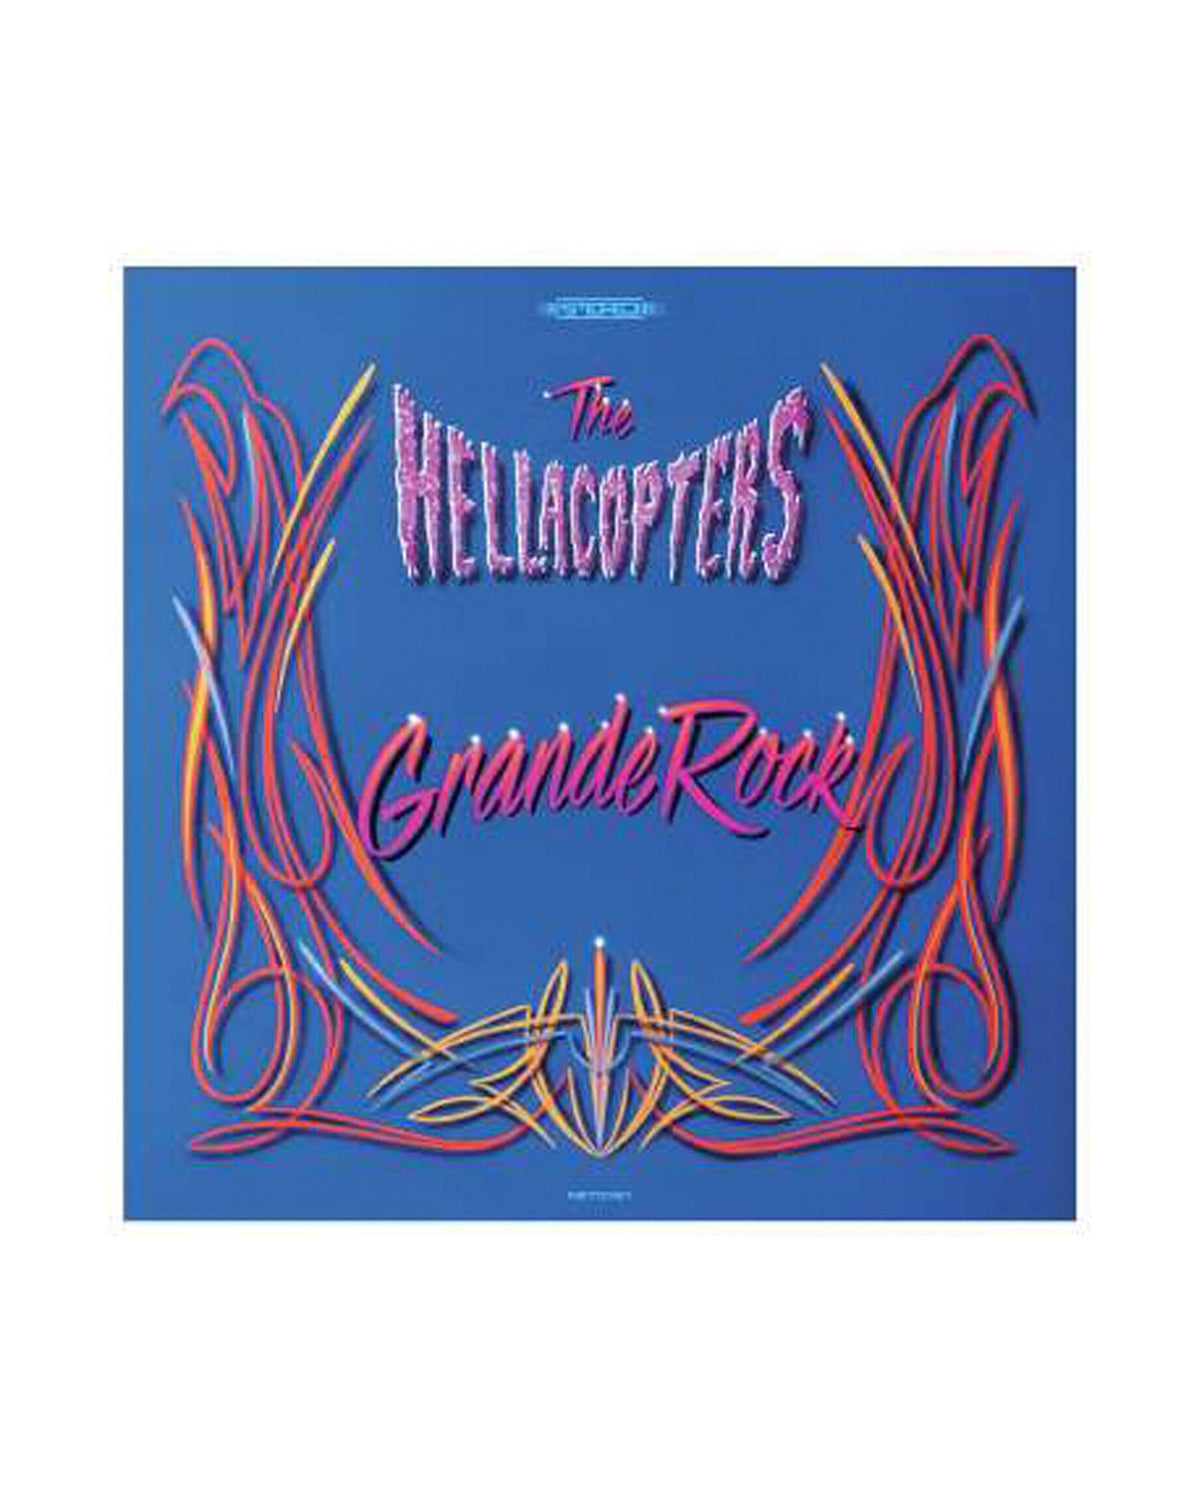 The Hellacopters - 2LP Vinilo "Grande Rock Revisited" - D2fy · Rocktud - Rocktud